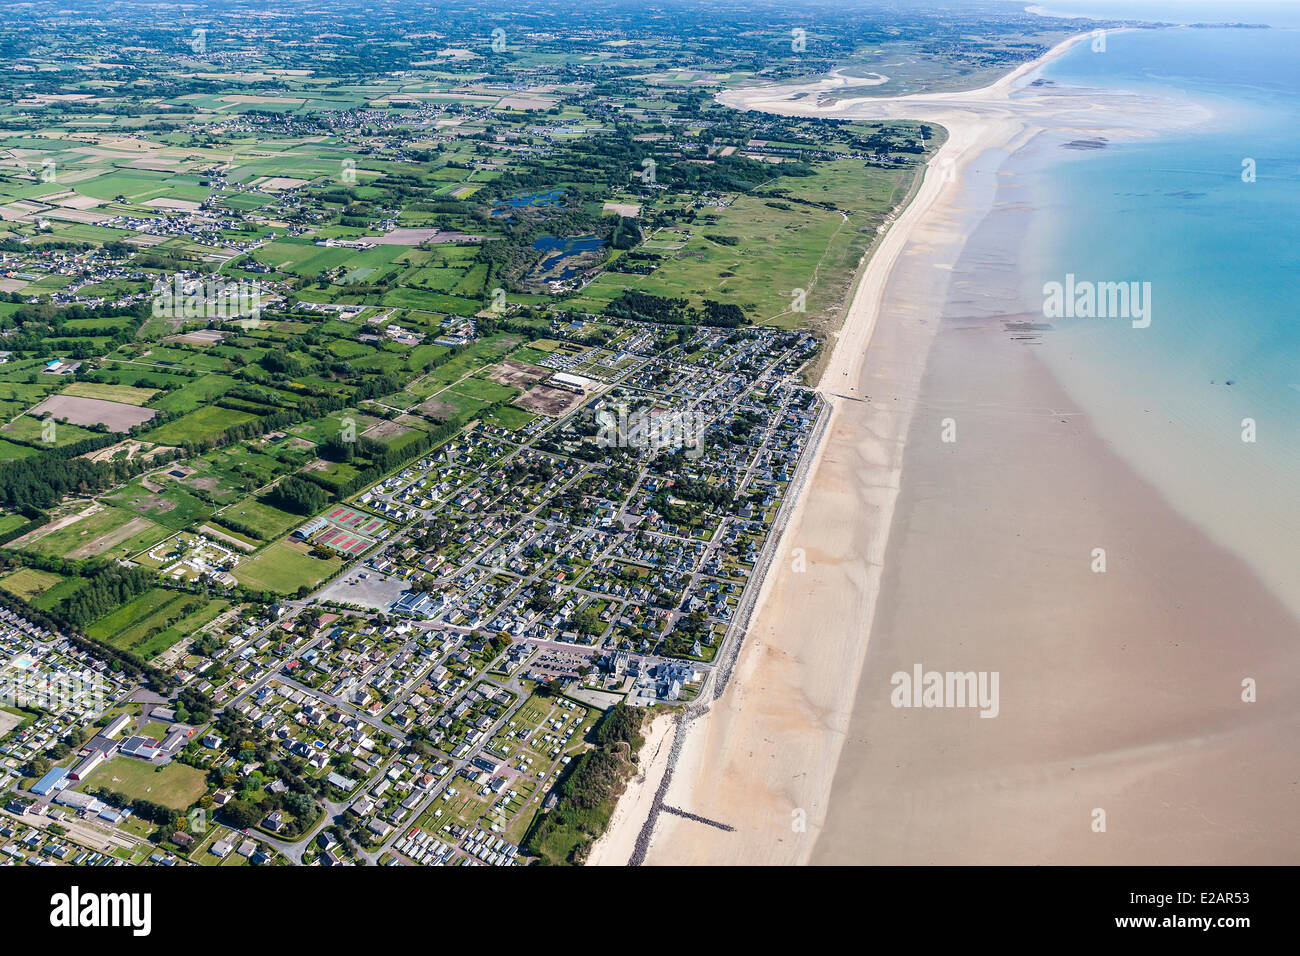 France, Manche, Cotentin, Hauteville sur Mer (aerial view) Stock Photo